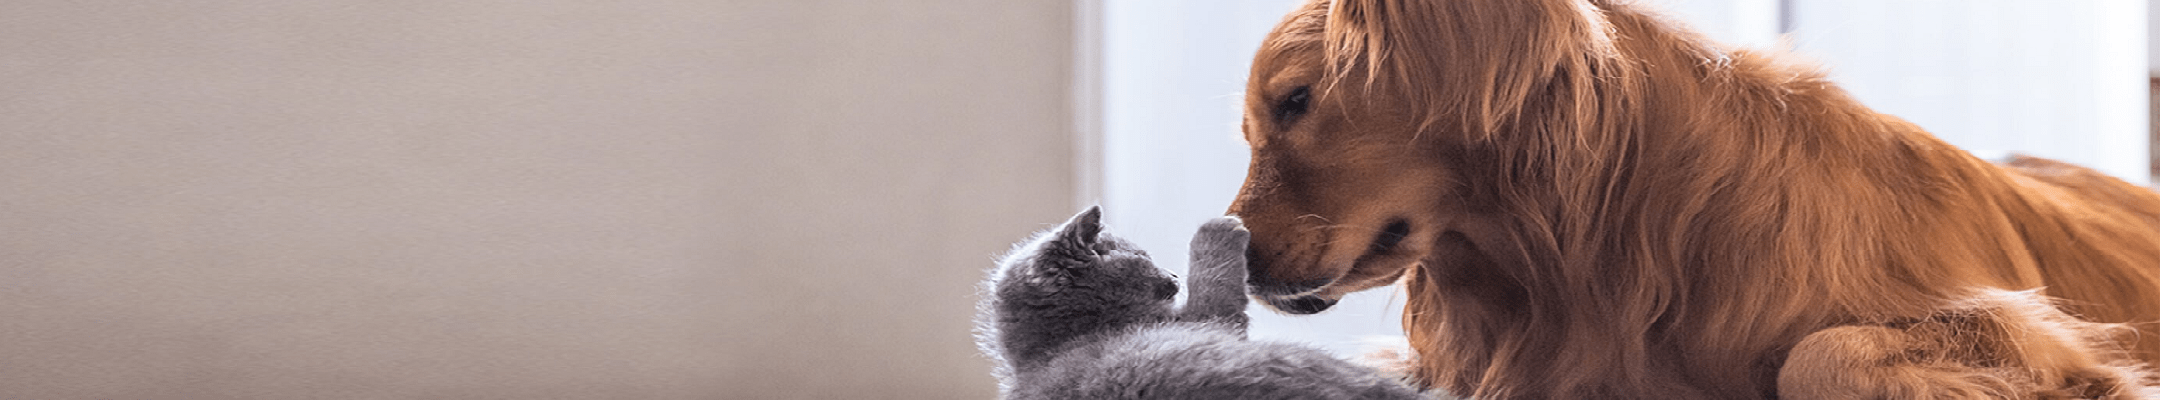 Advantage® vlooienbehandeling voor honden en katten